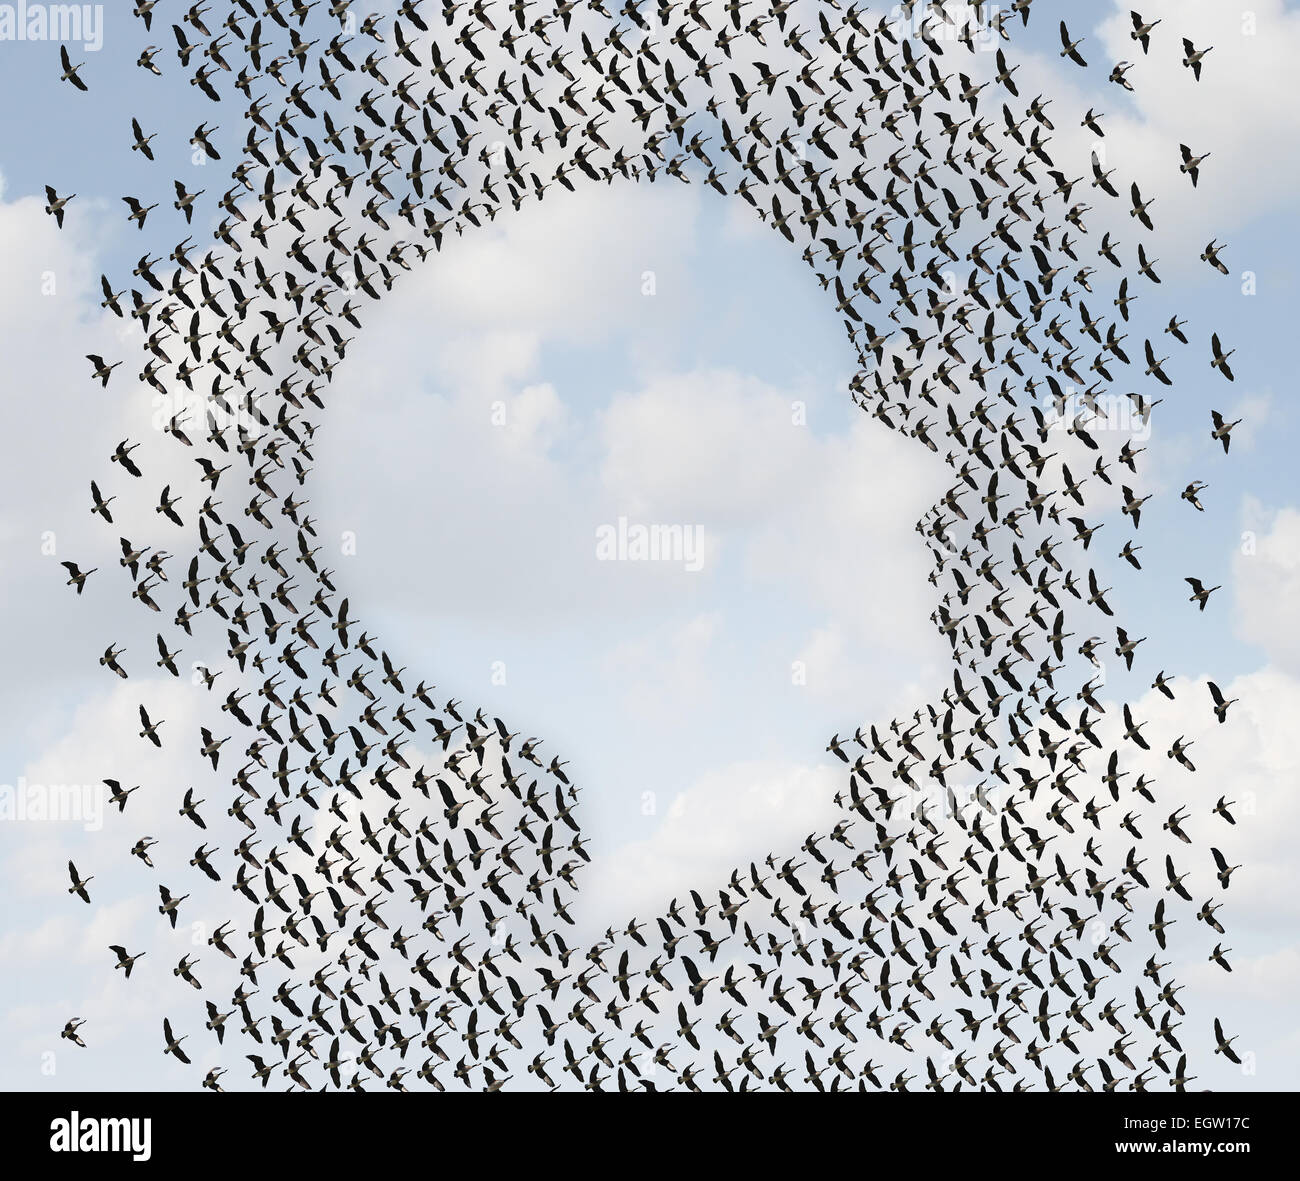 Menschliche Freiheit und Auswanderung Konzept als eine Gruppe von fliegenden Gänse als eine organisierte Vogelschwarm in Form von Kopf oder Gesicht pr Stockfoto